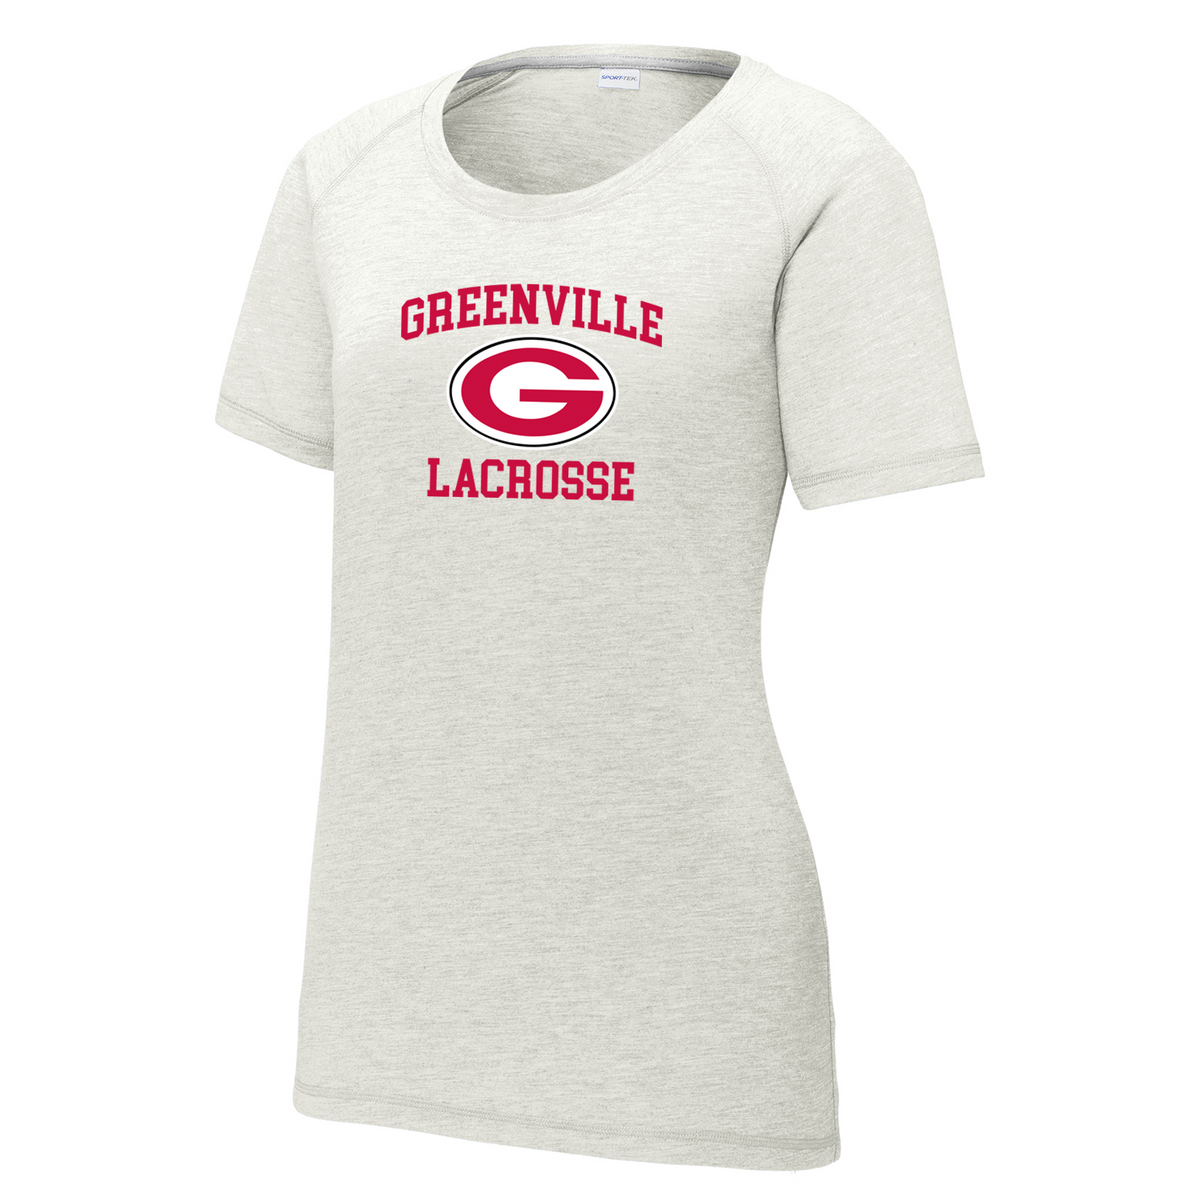 Greenville Lacrosse Women's Raglan CottonTouch